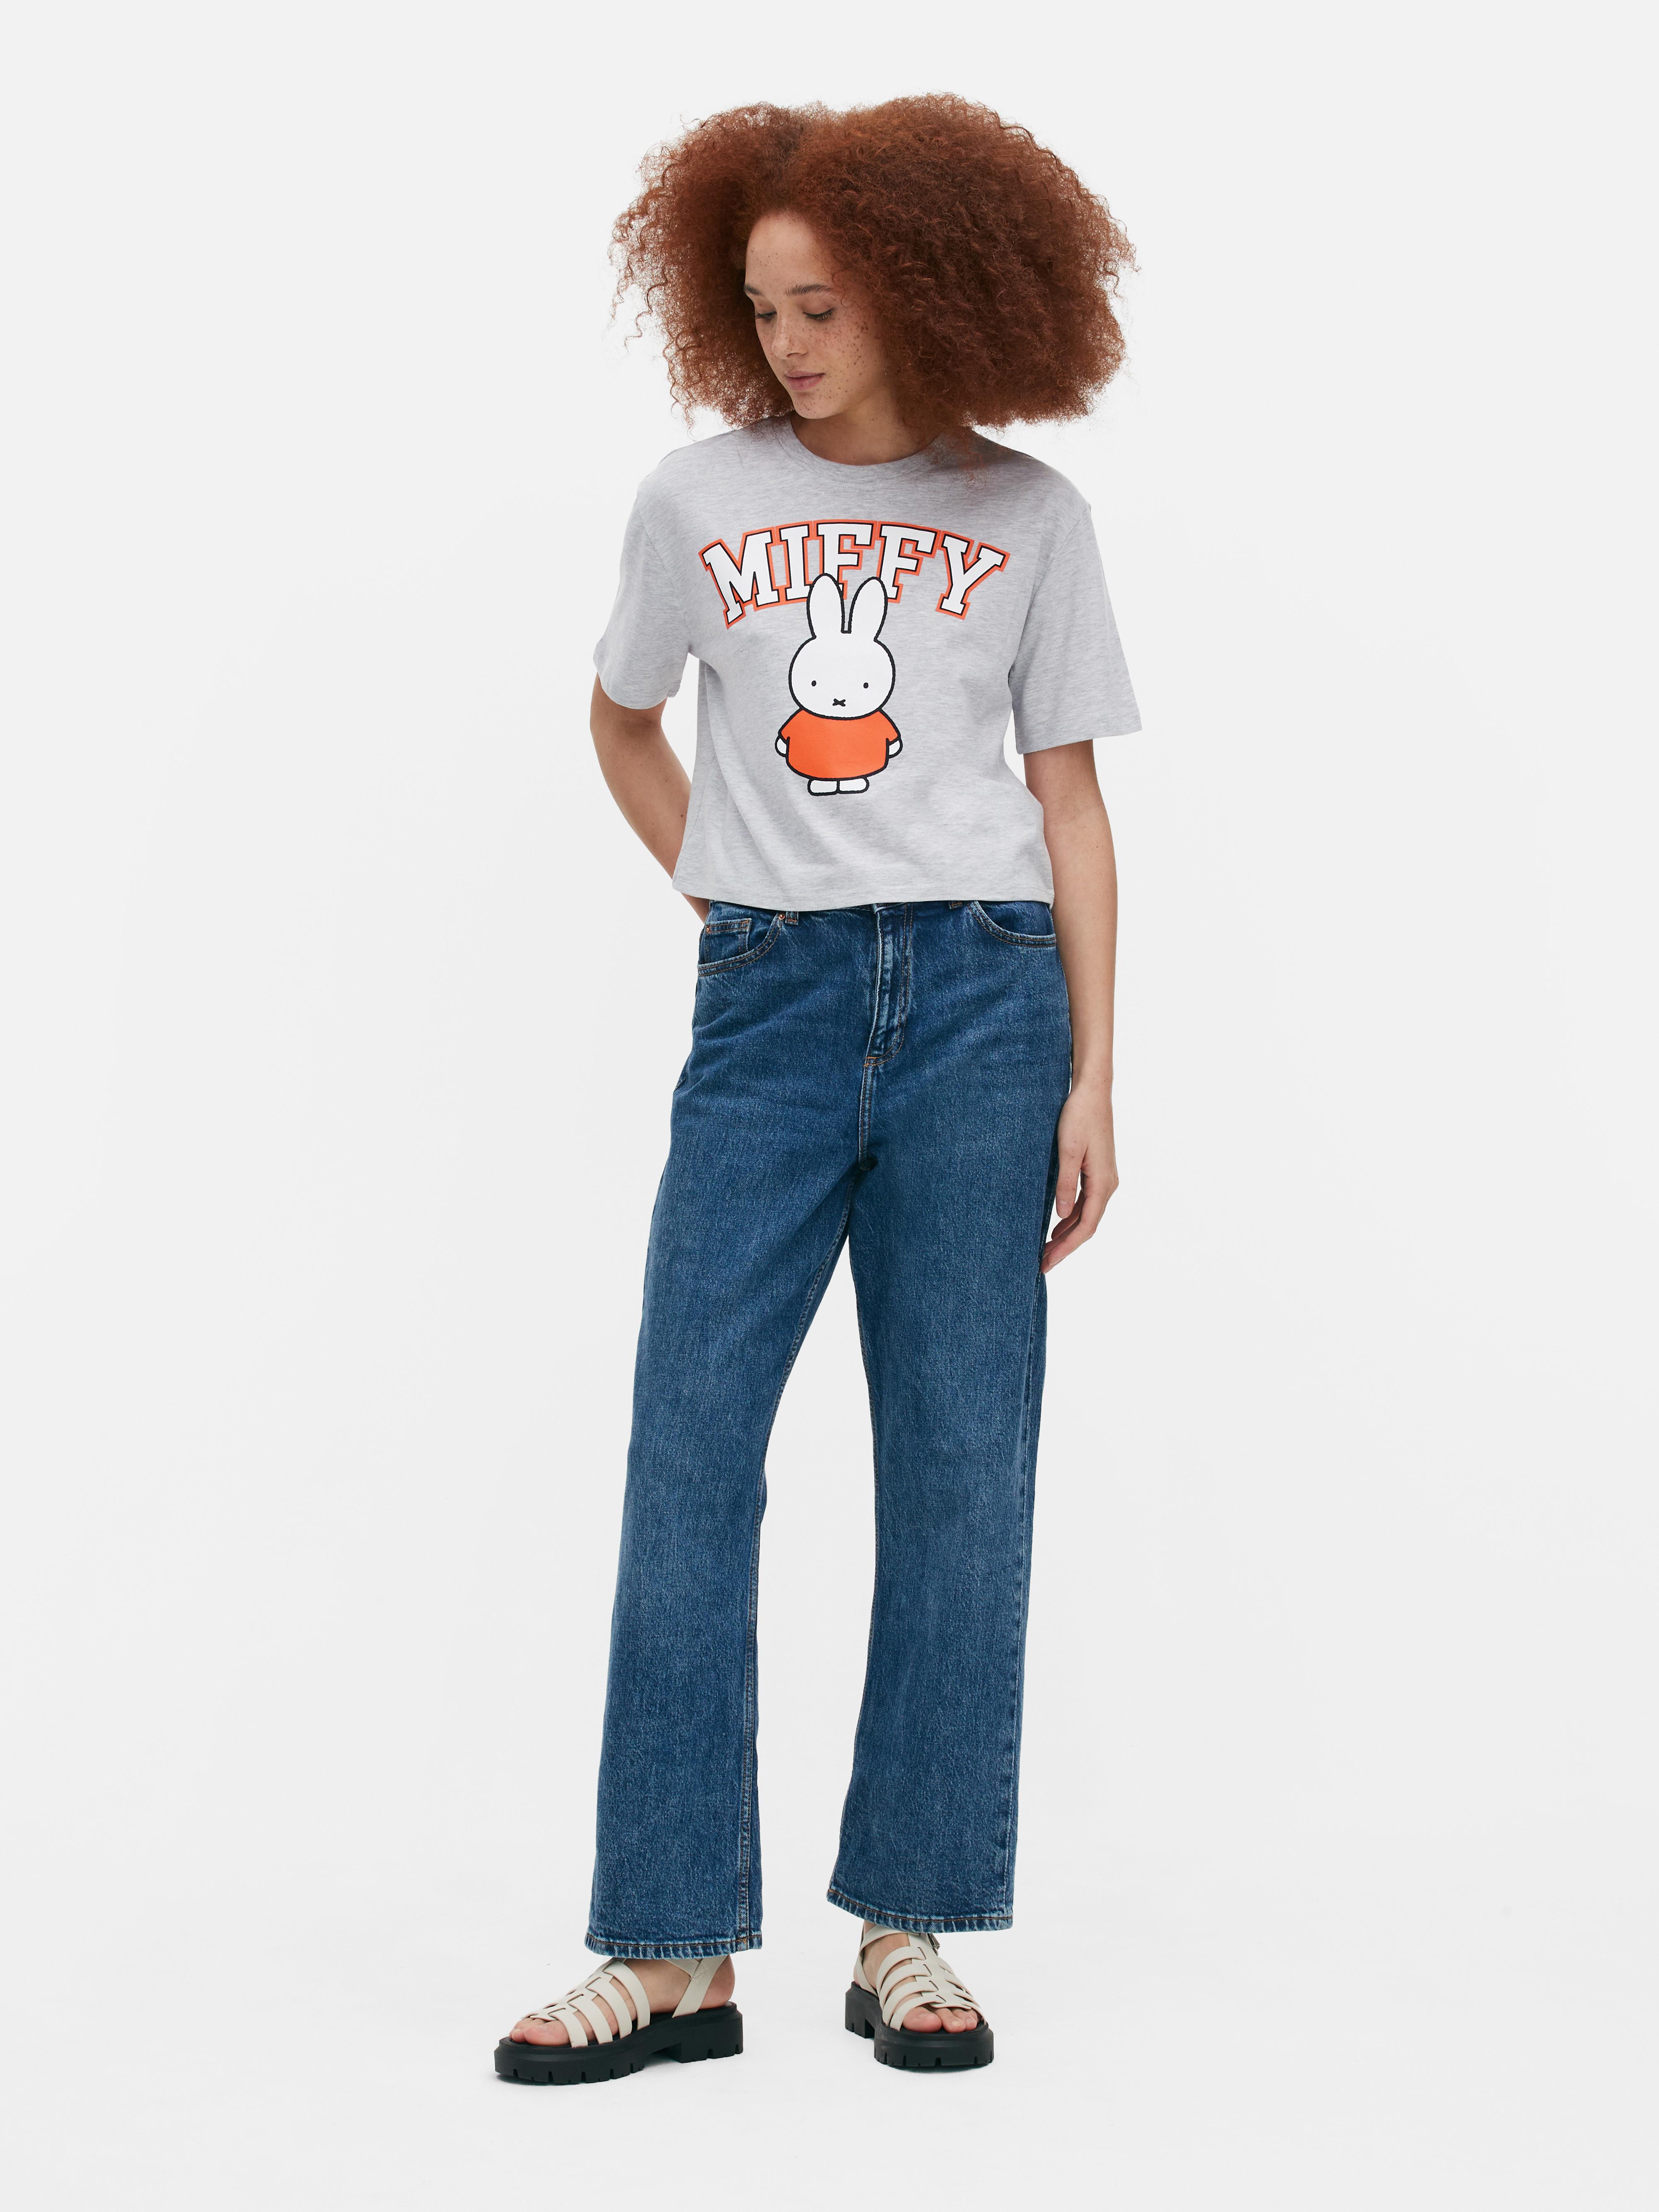 T-shirt o pudełkowym kroju Miffy, część zestawu